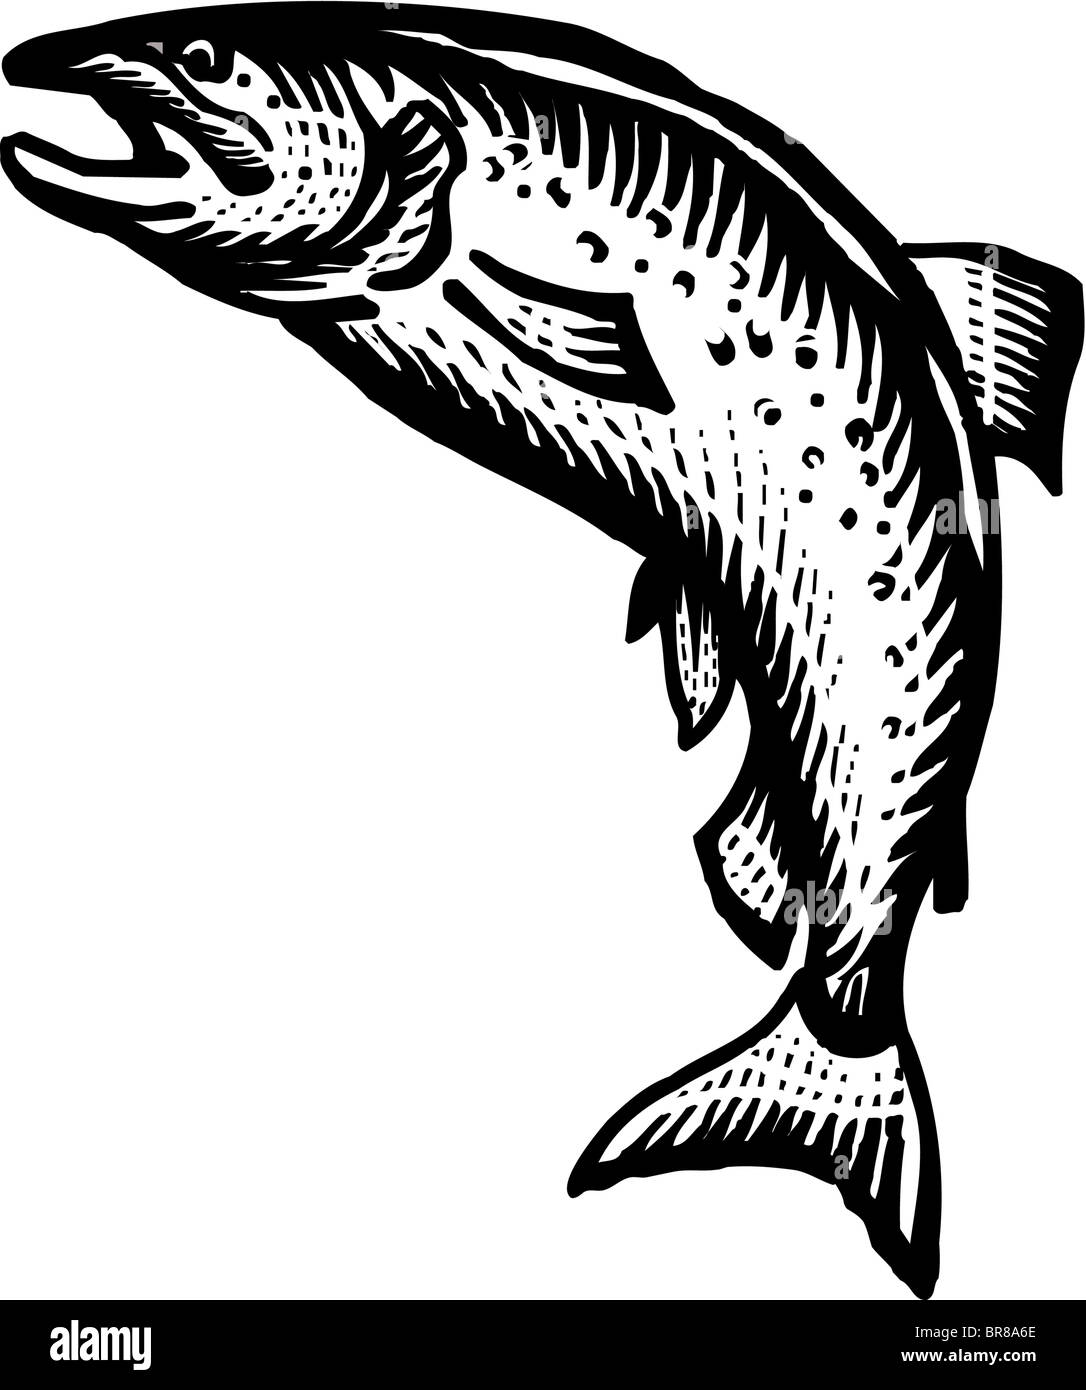 Une photo d'un saumon noir et blanc Banque D'Images